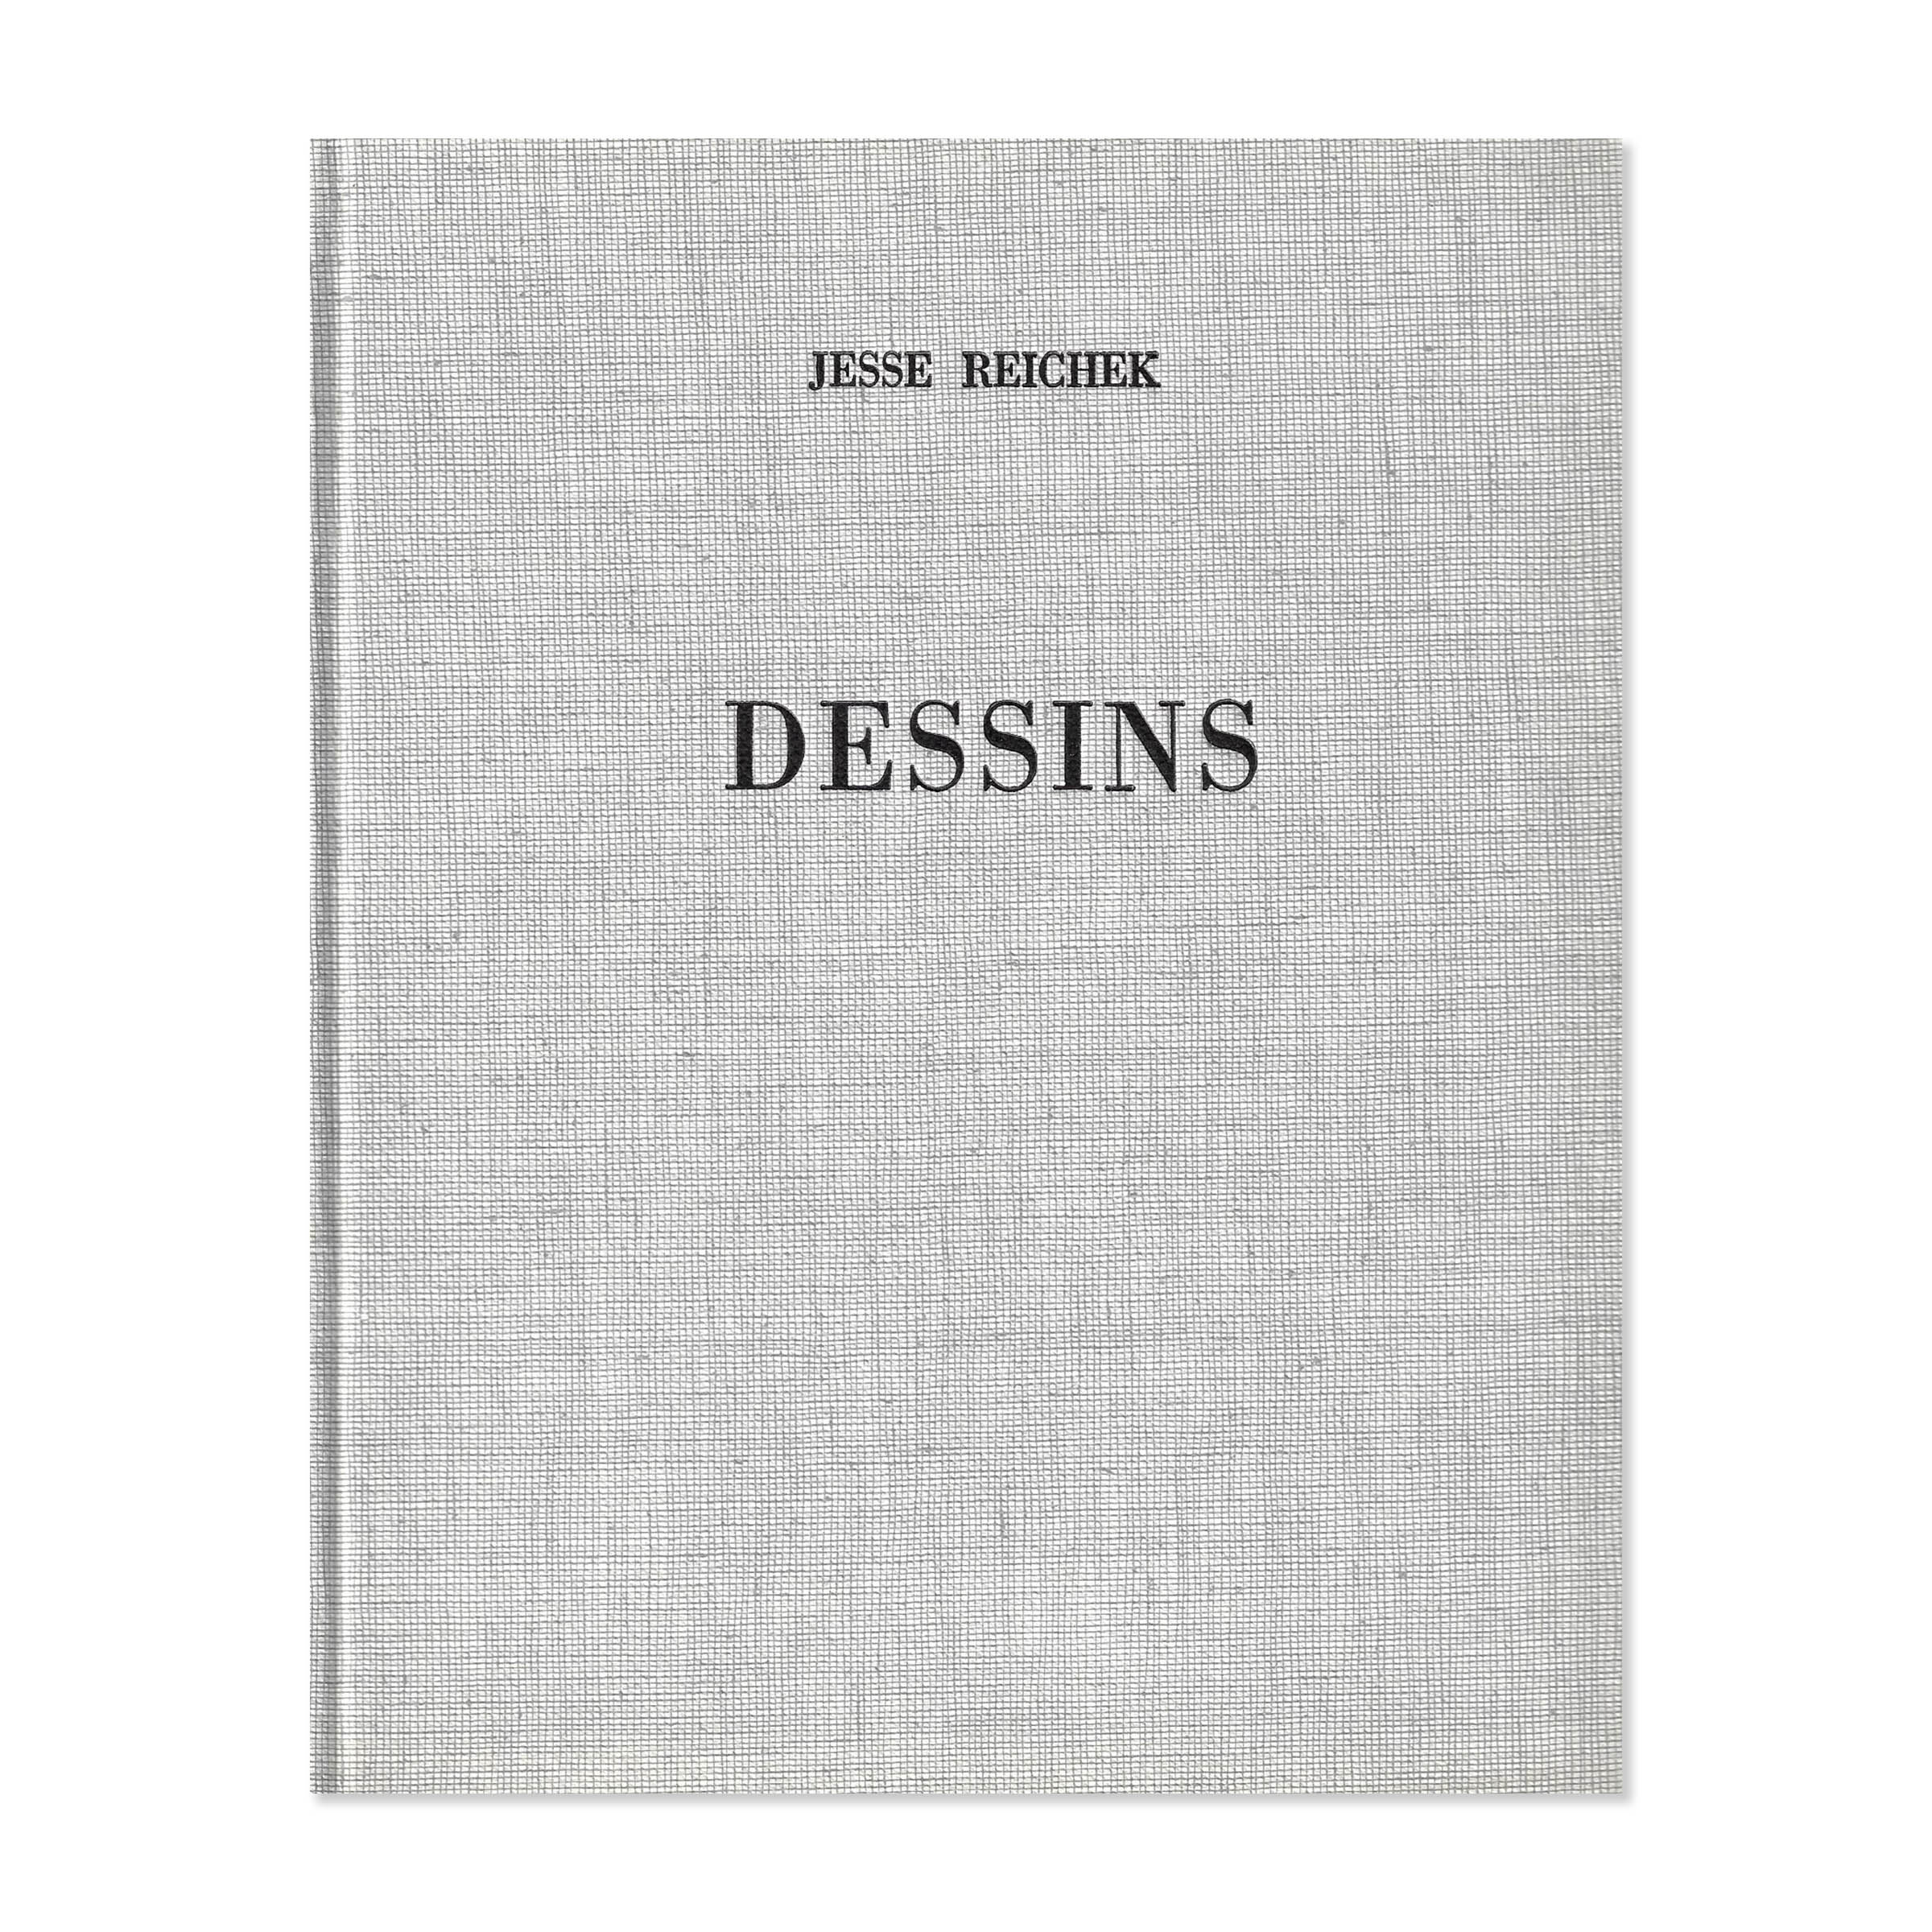 Jesse Reichek. Dessins. Sans jacquette. Cover view